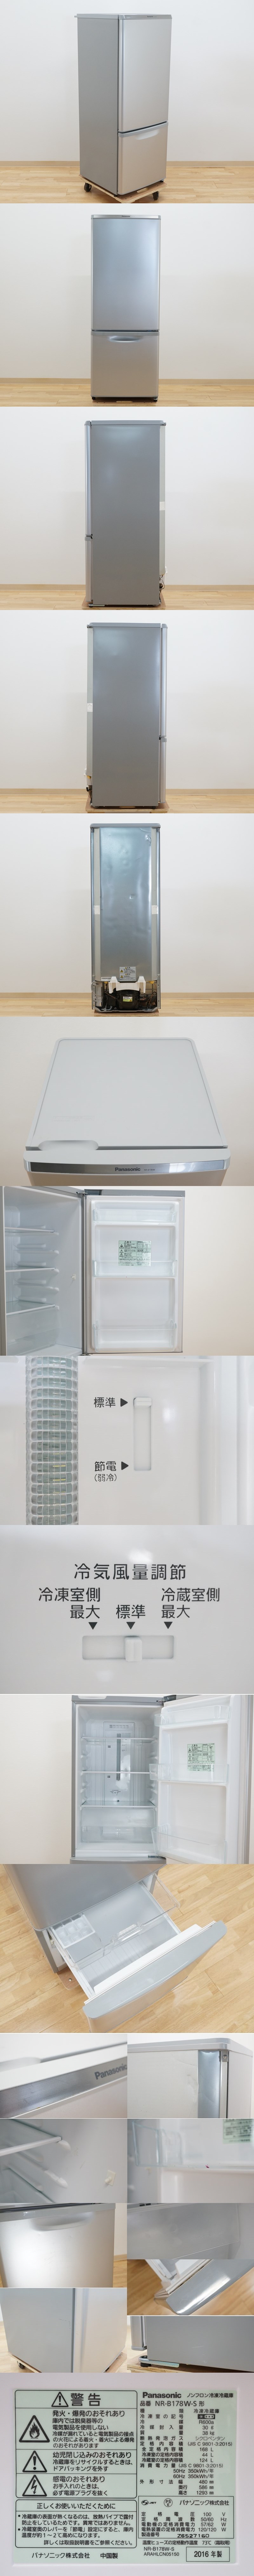 販売質屋前ダ:2ドア冷凍冷蔵庫 168L NR-B178W-S シルバー 大きめ冷凍室37L お手入れ簡単ガラストレイ ★送料無料★ 100リットル～